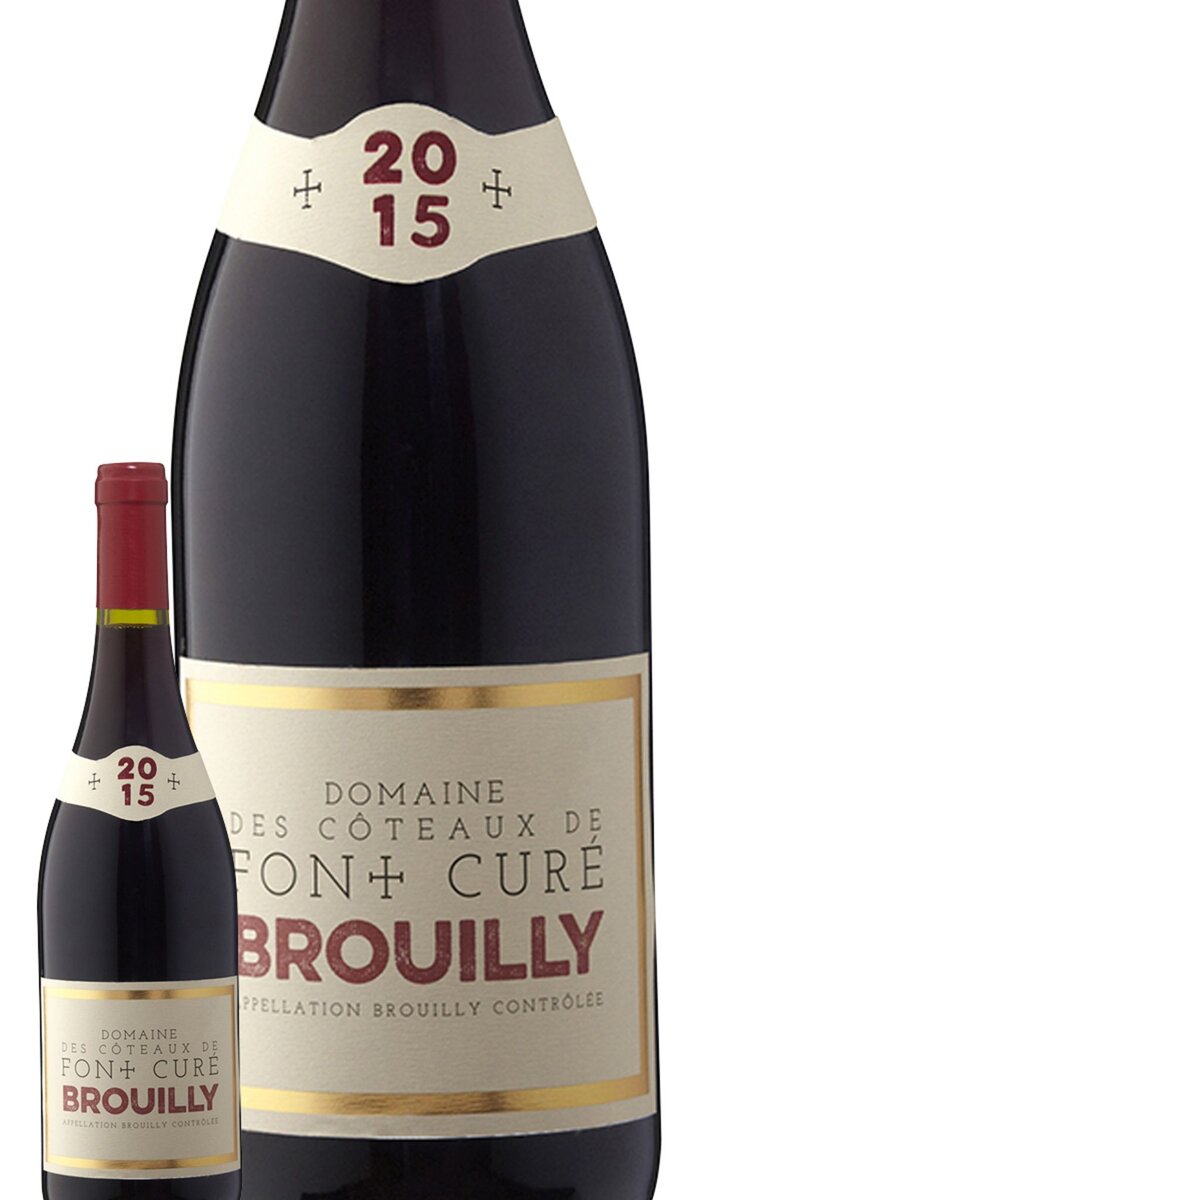 Domaine des Côteaux de Font Cure Brouilly Rouge 2015